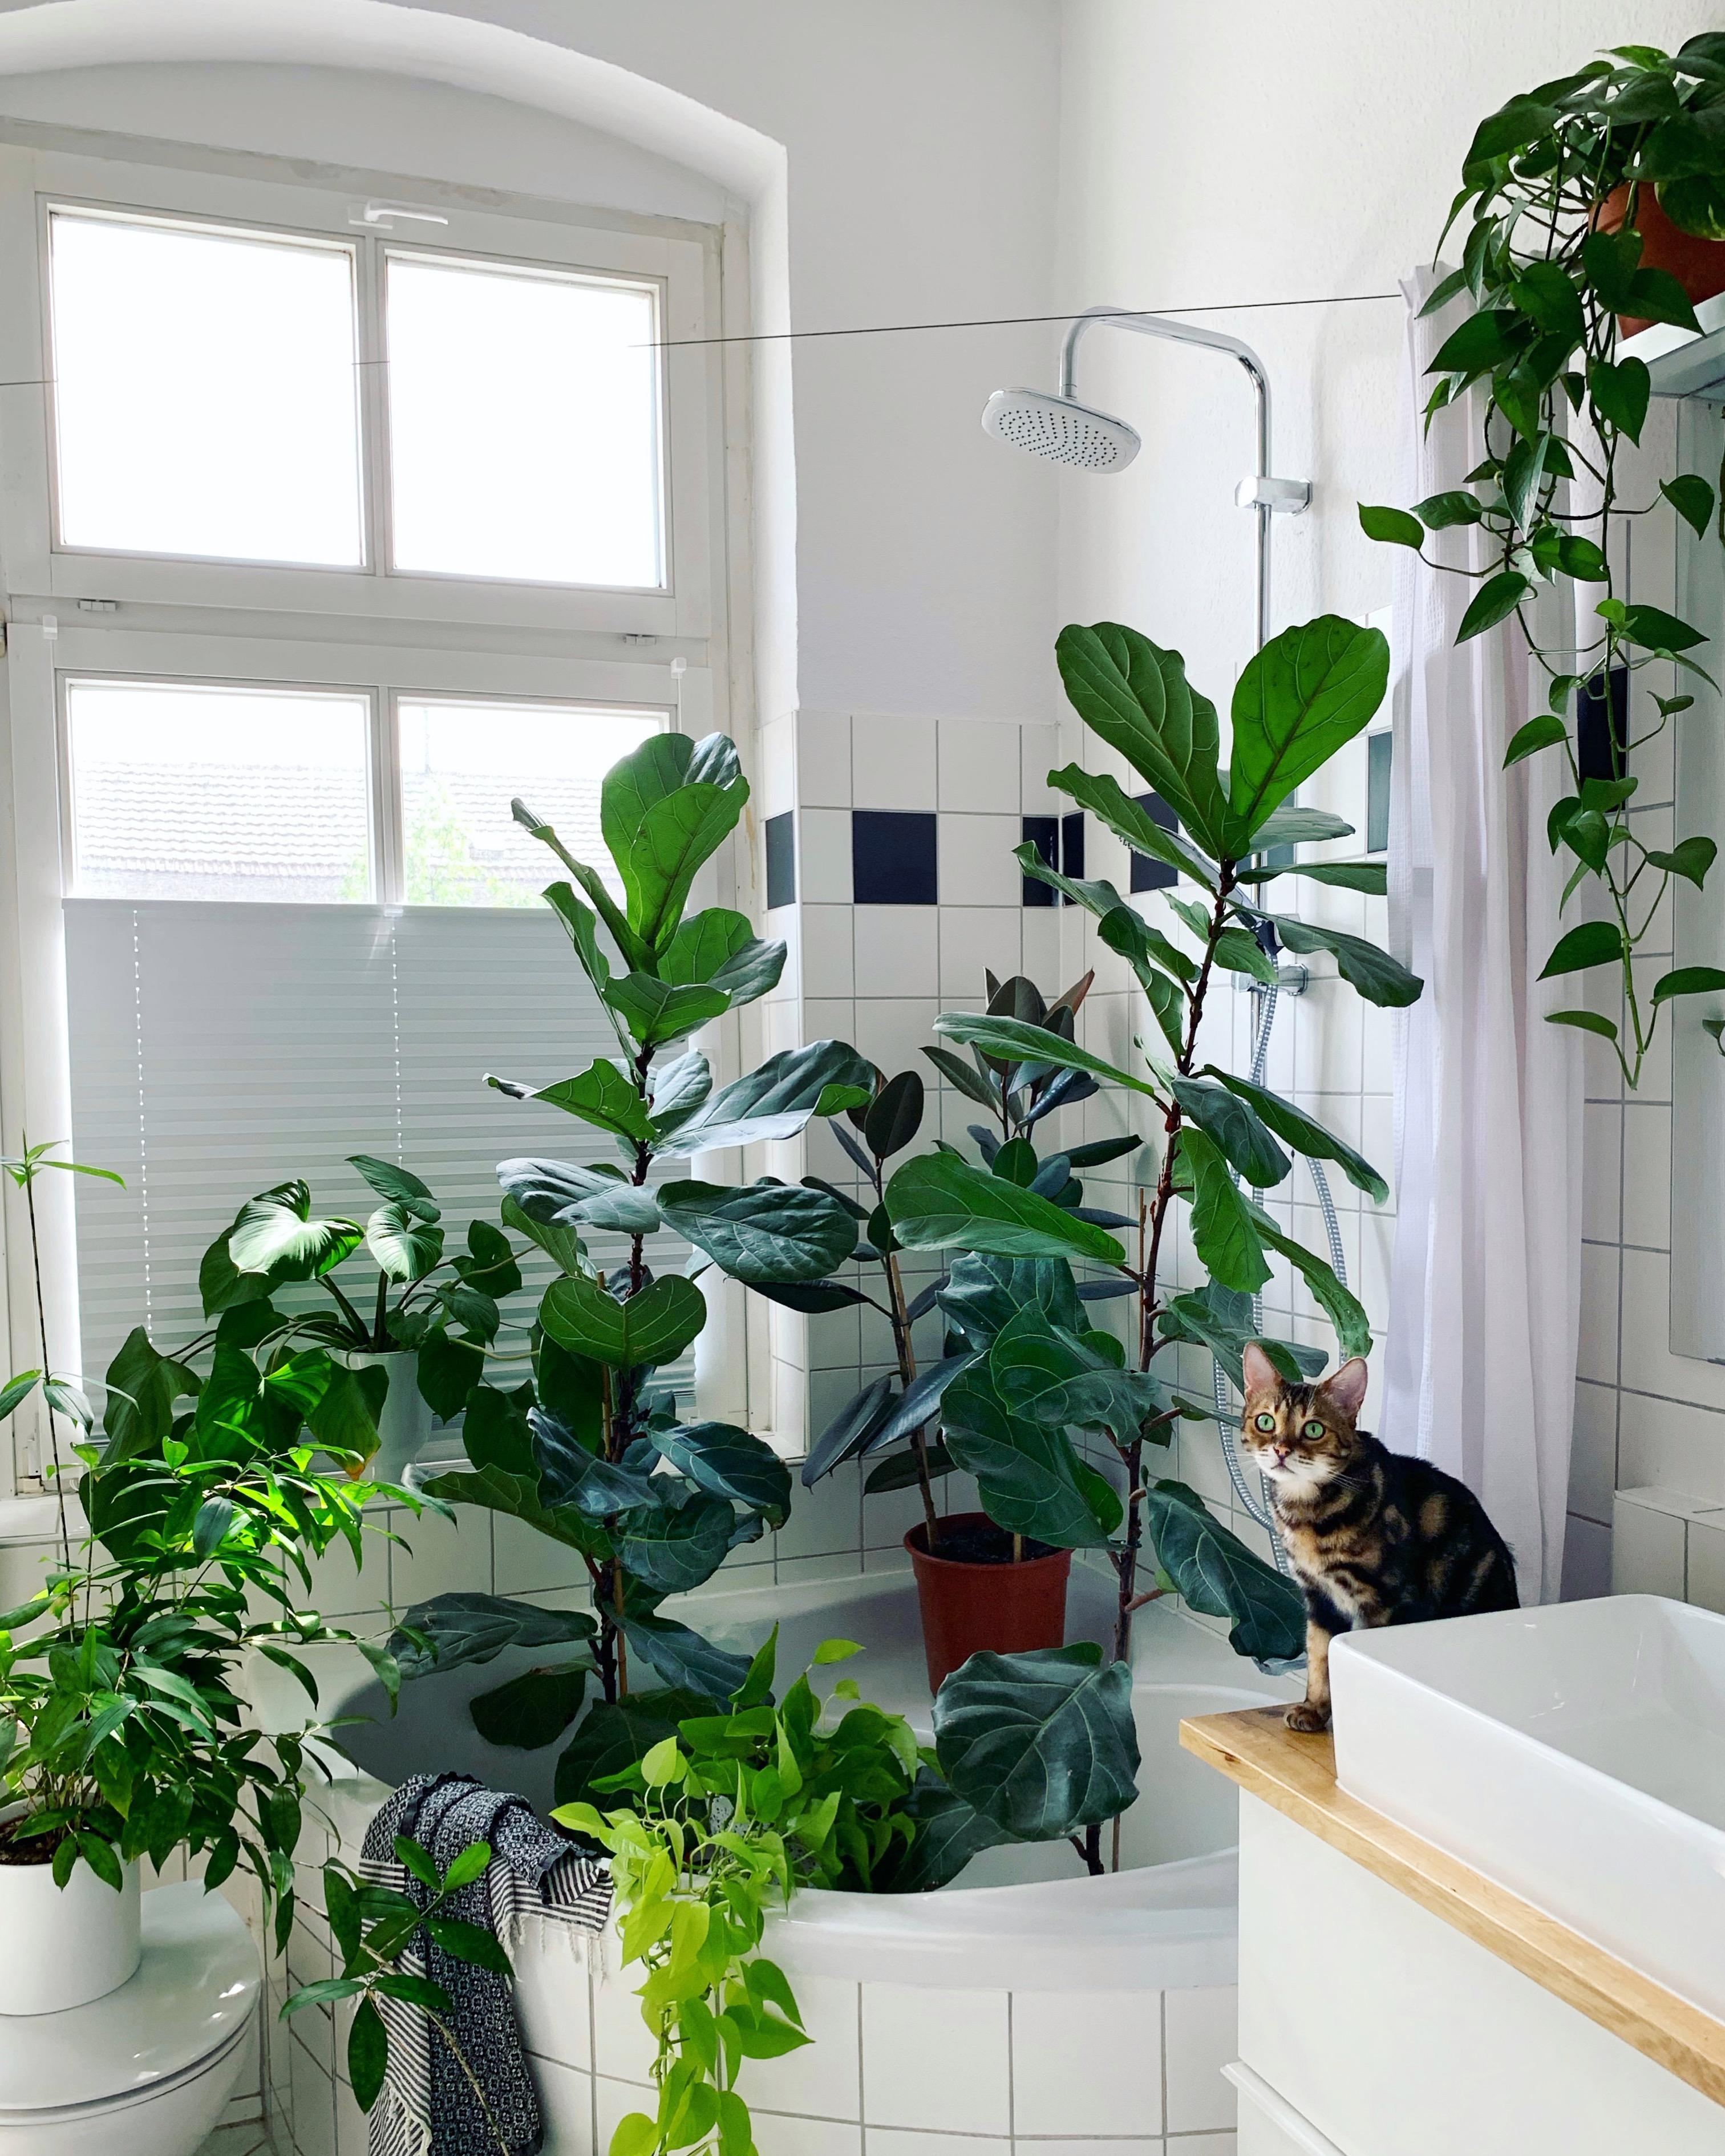 Pflanzen duschen mit Kater. #pflanzen #katze #badezimmer